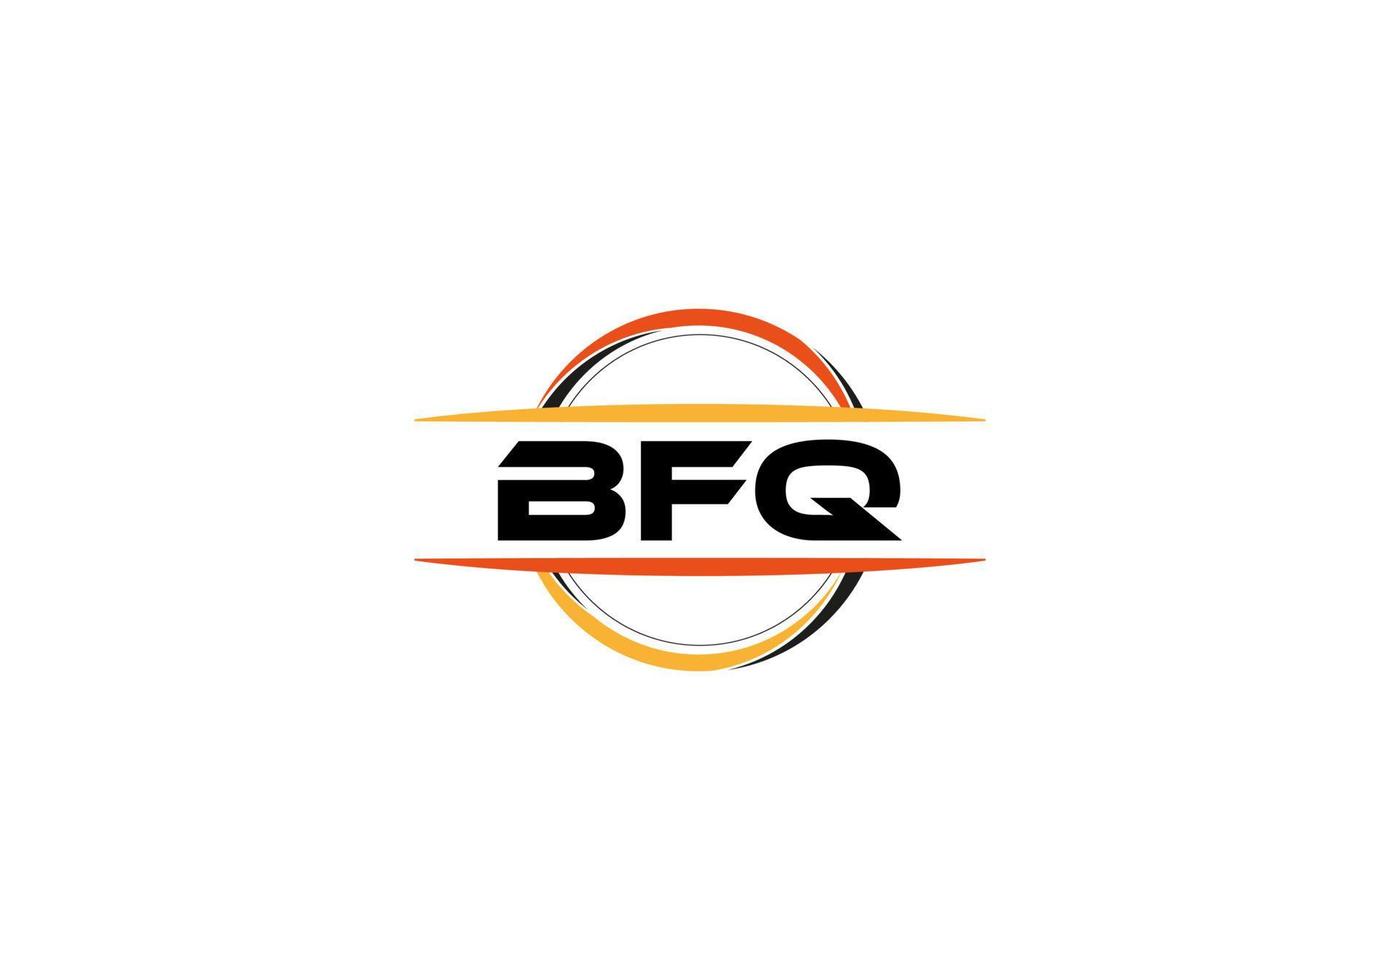 bfq letra realeza elipse forma logo. bfq cepillo Arte logo. bfq logo para un compañía, negocio, y comercial usar. vector